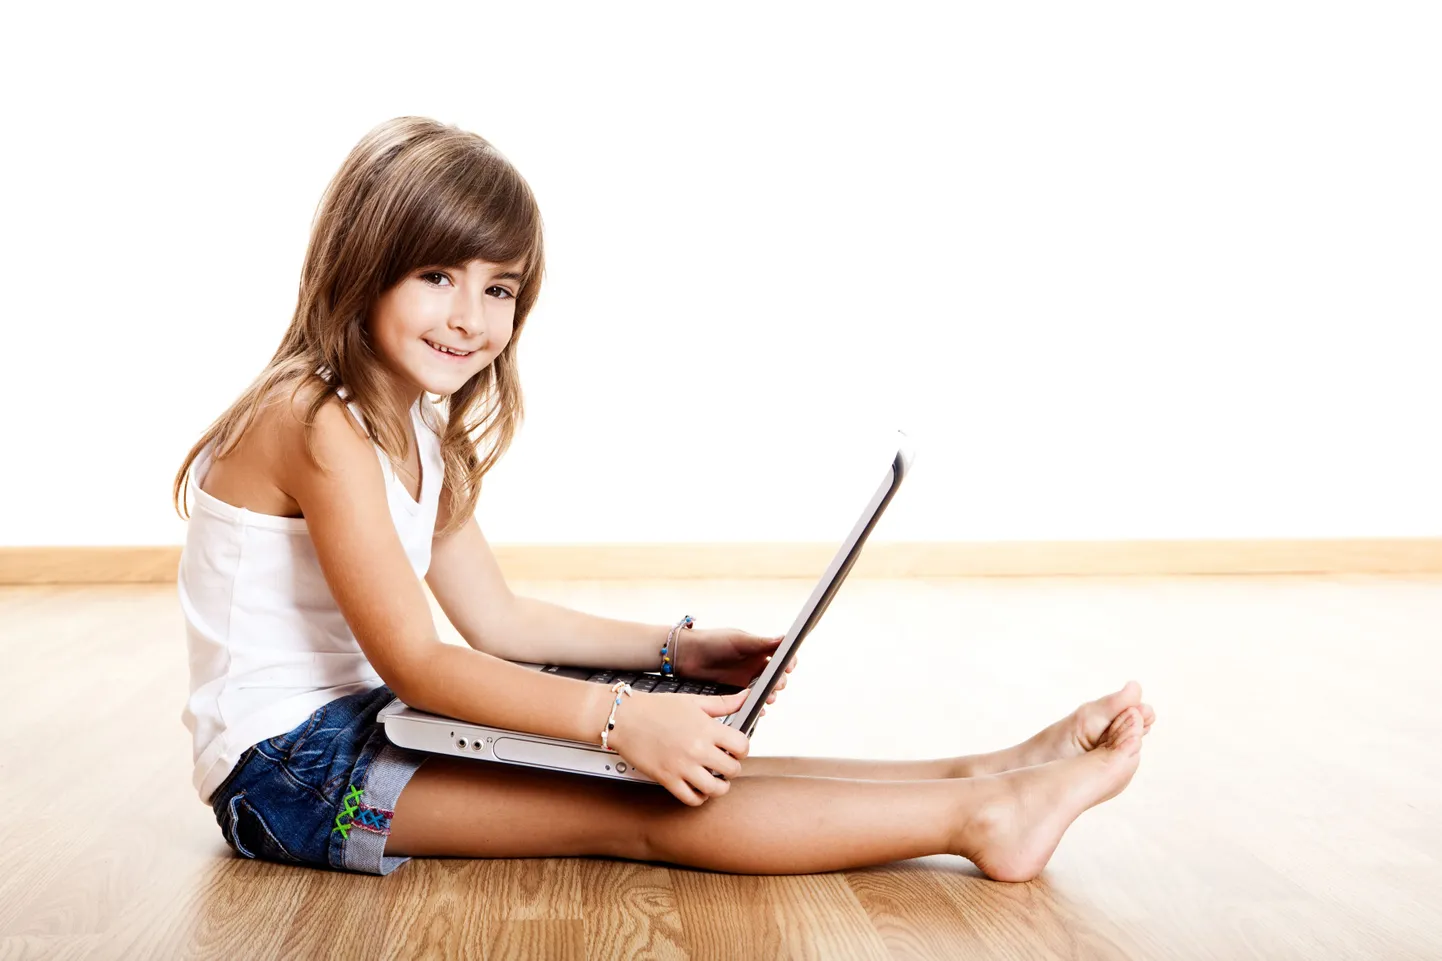 Lastega perede seas on kodus internetti pääsejaid rohkem.